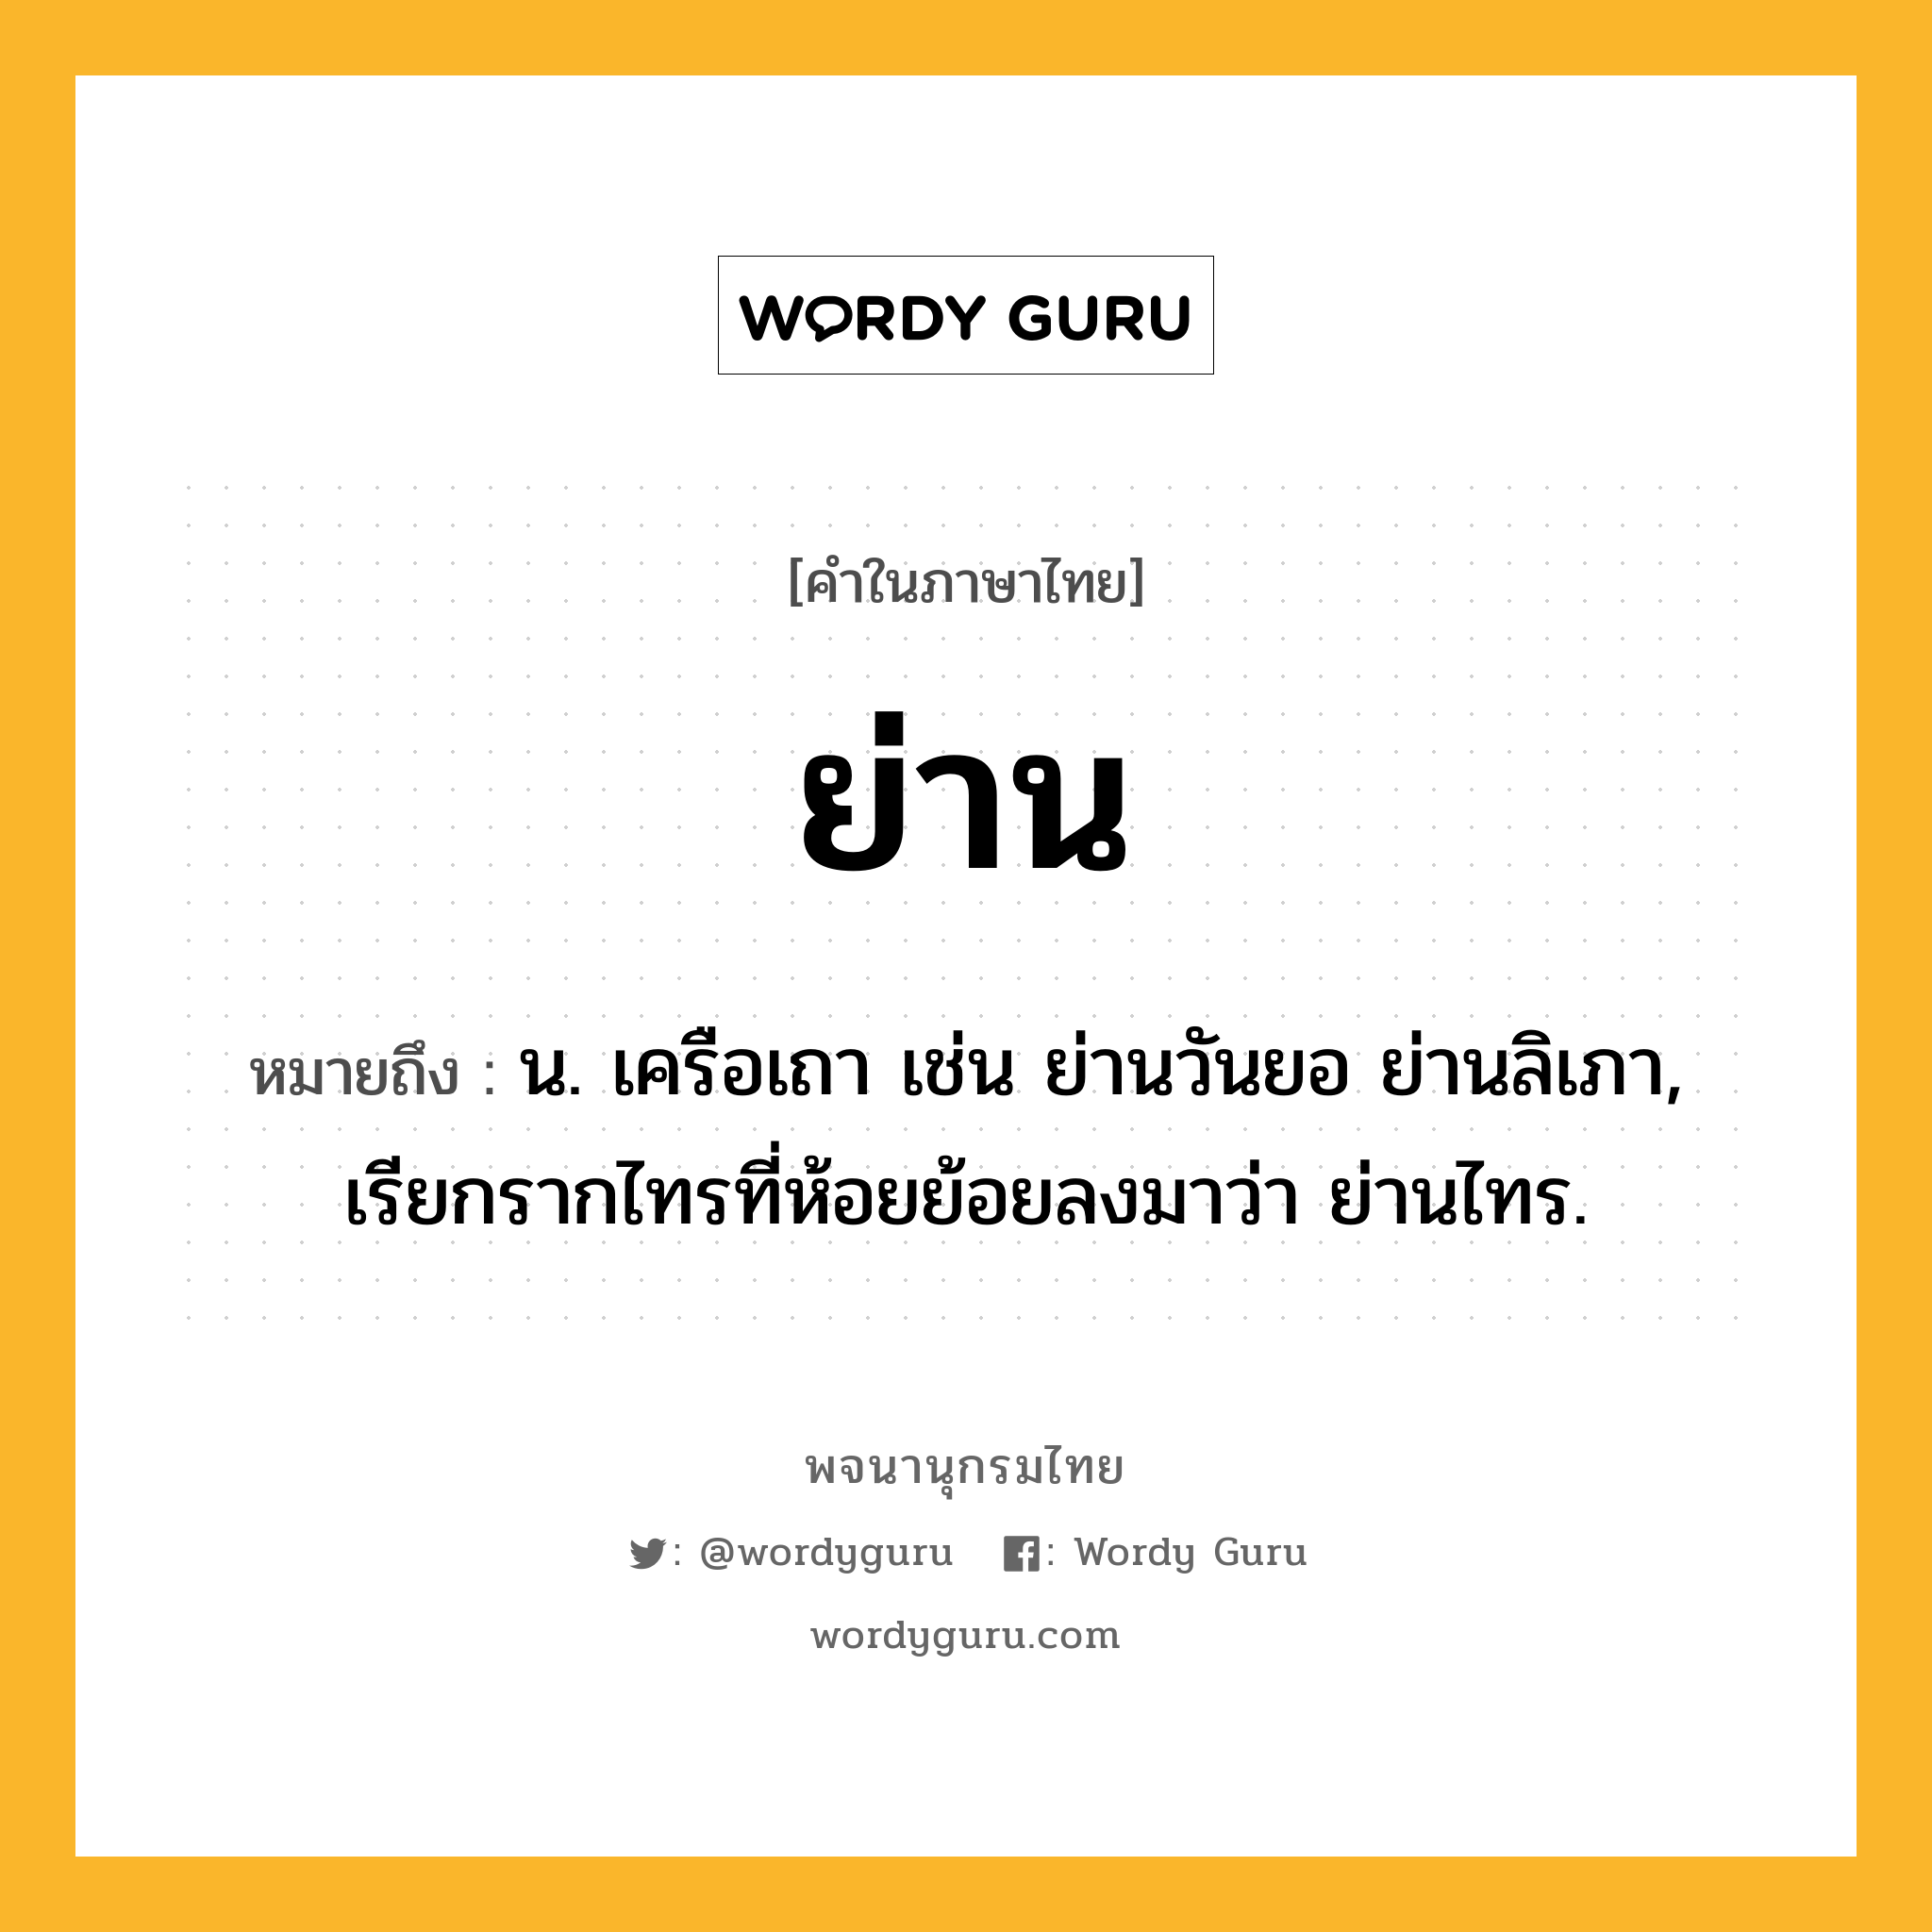 ย่าน ความหมาย หมายถึงอะไร?, คำในภาษาไทย ย่าน หมายถึง น. เครือเถา เช่น ย่านวันยอ ย่านลิเภา, เรียกรากไทรที่ห้อยย้อยลงมาว่า ย่านไทร.